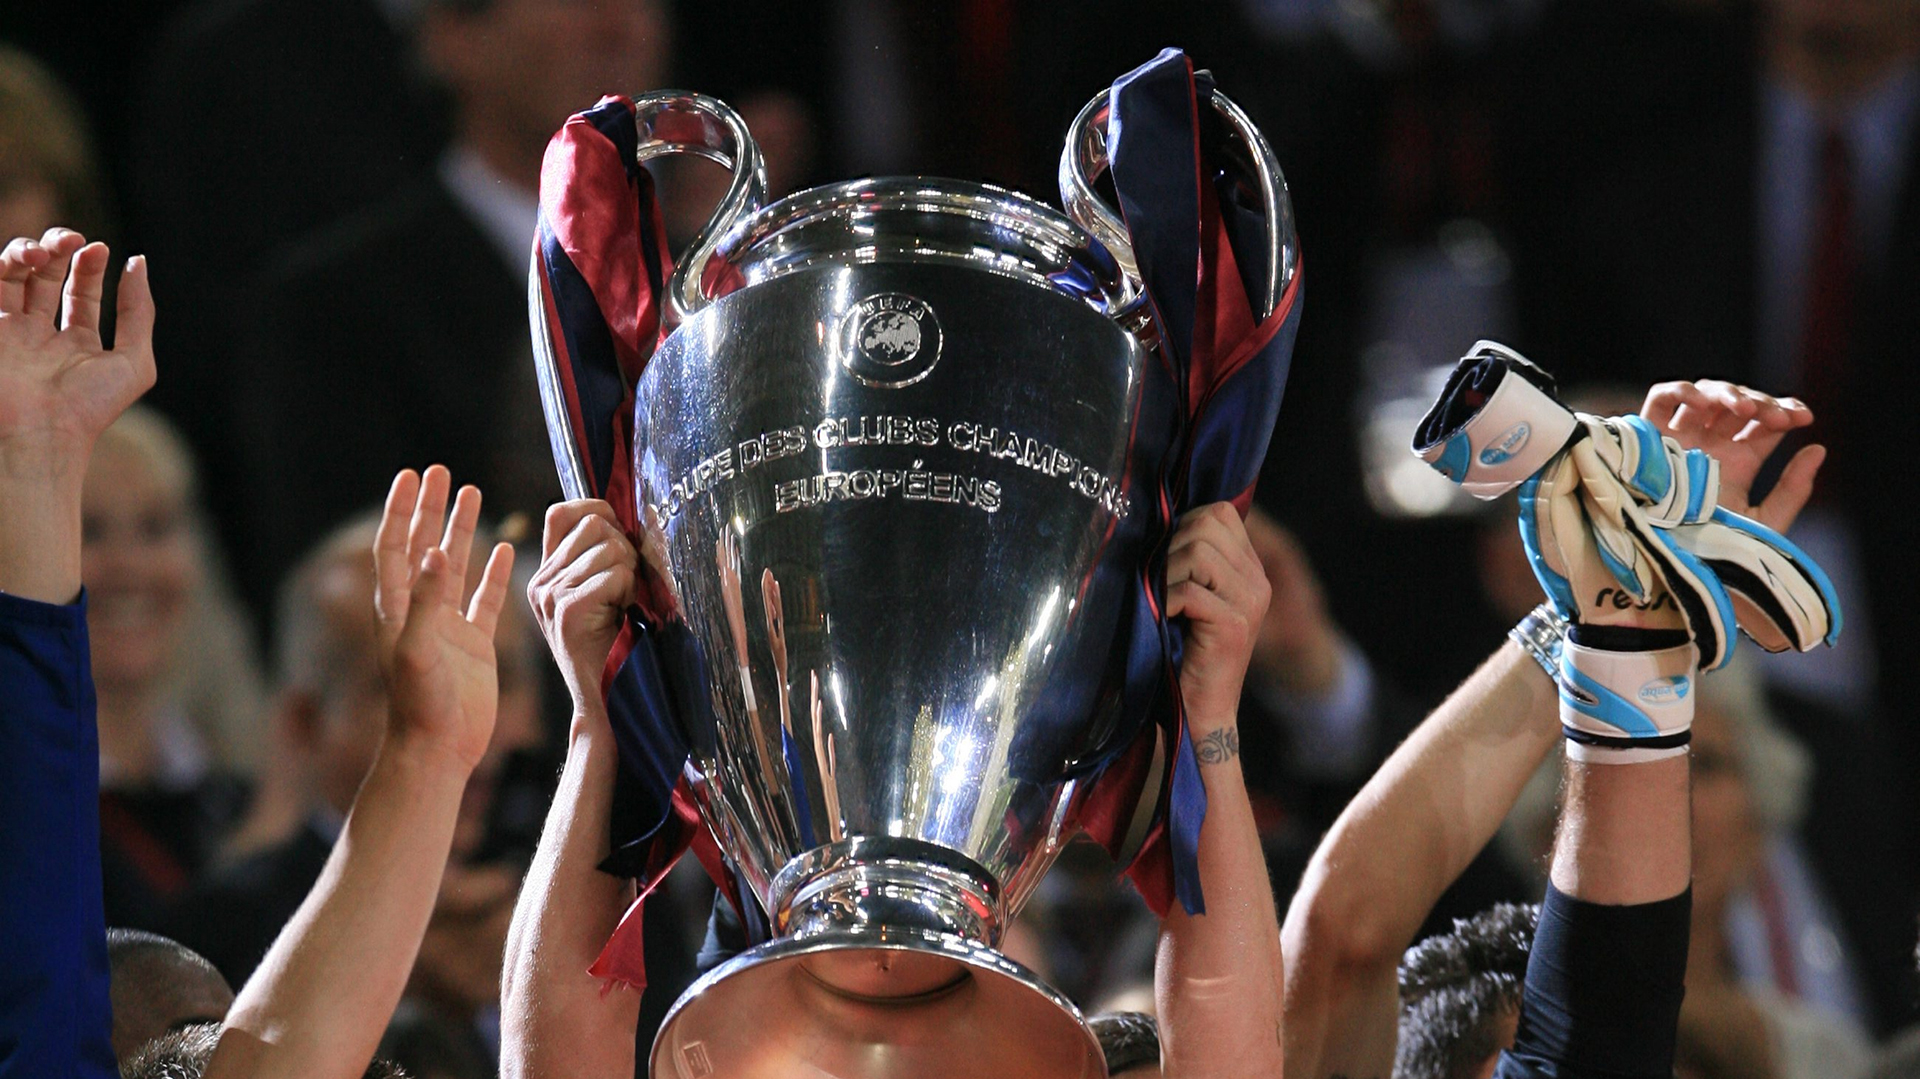 La Champions League es la competencia más importante a nivel clubes en el mundo (Shutterstock.com)